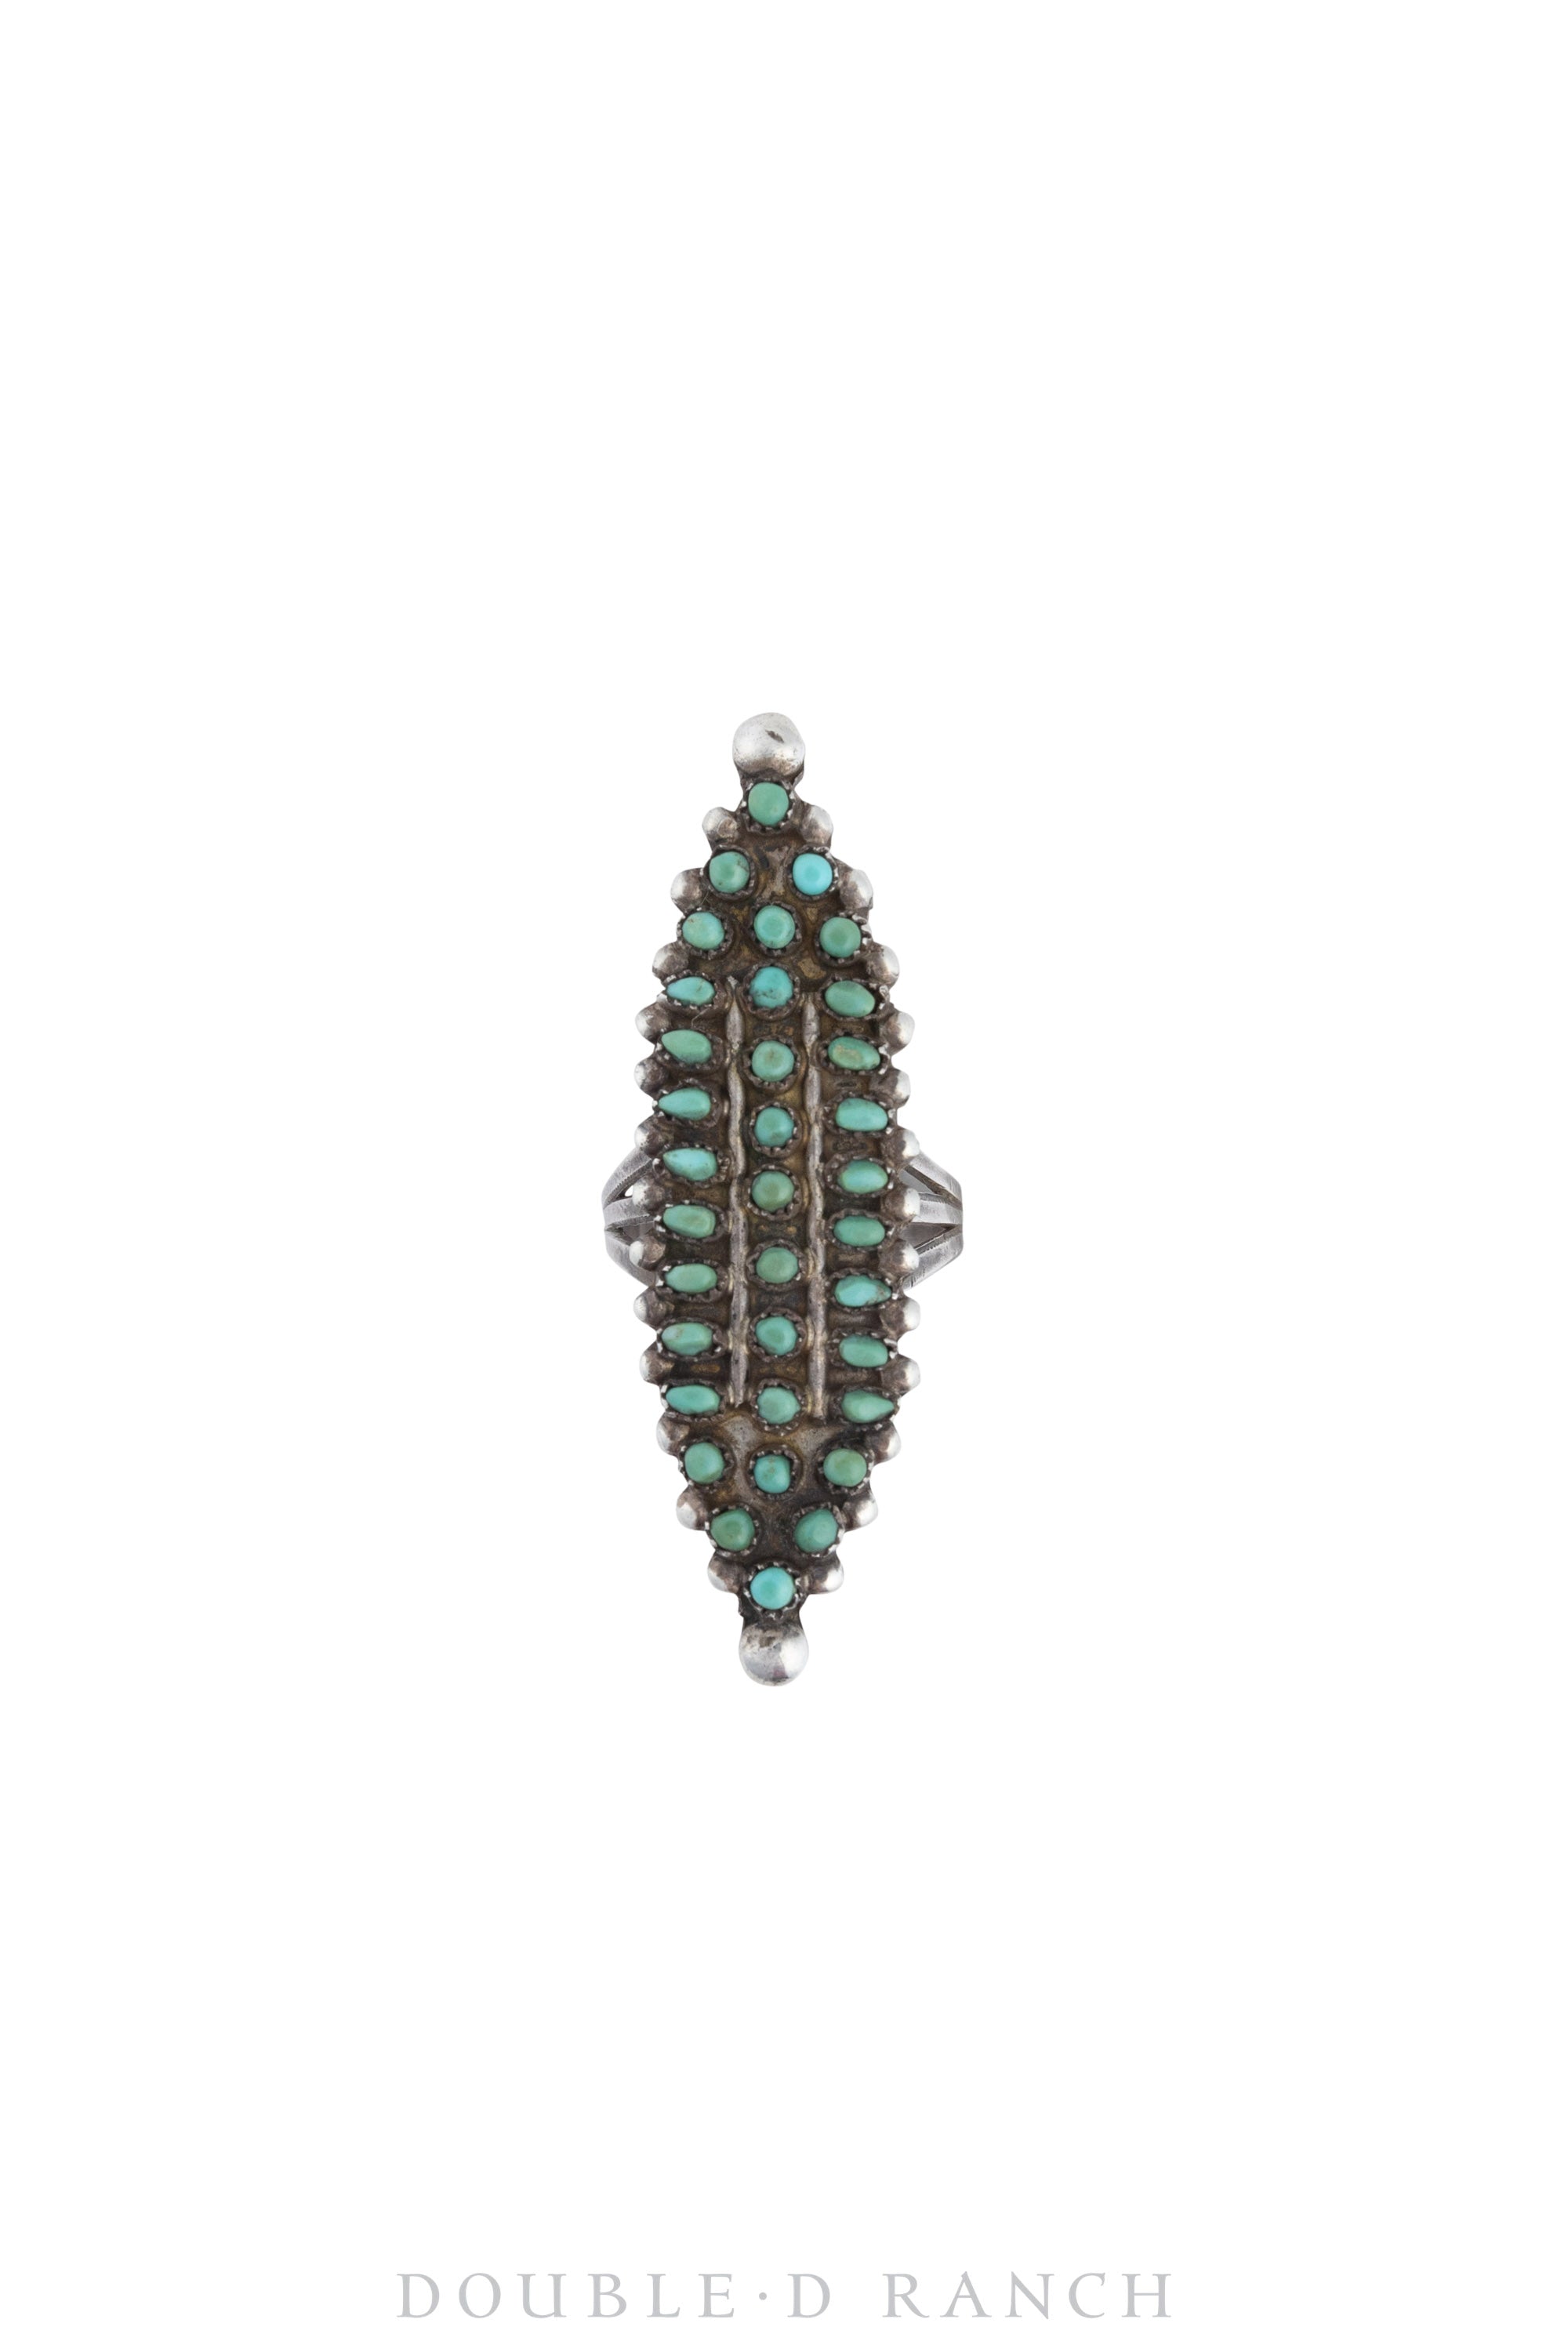 Ring, Cluster, Turquoise, Zuni Snake Eye, Vintage, 1431